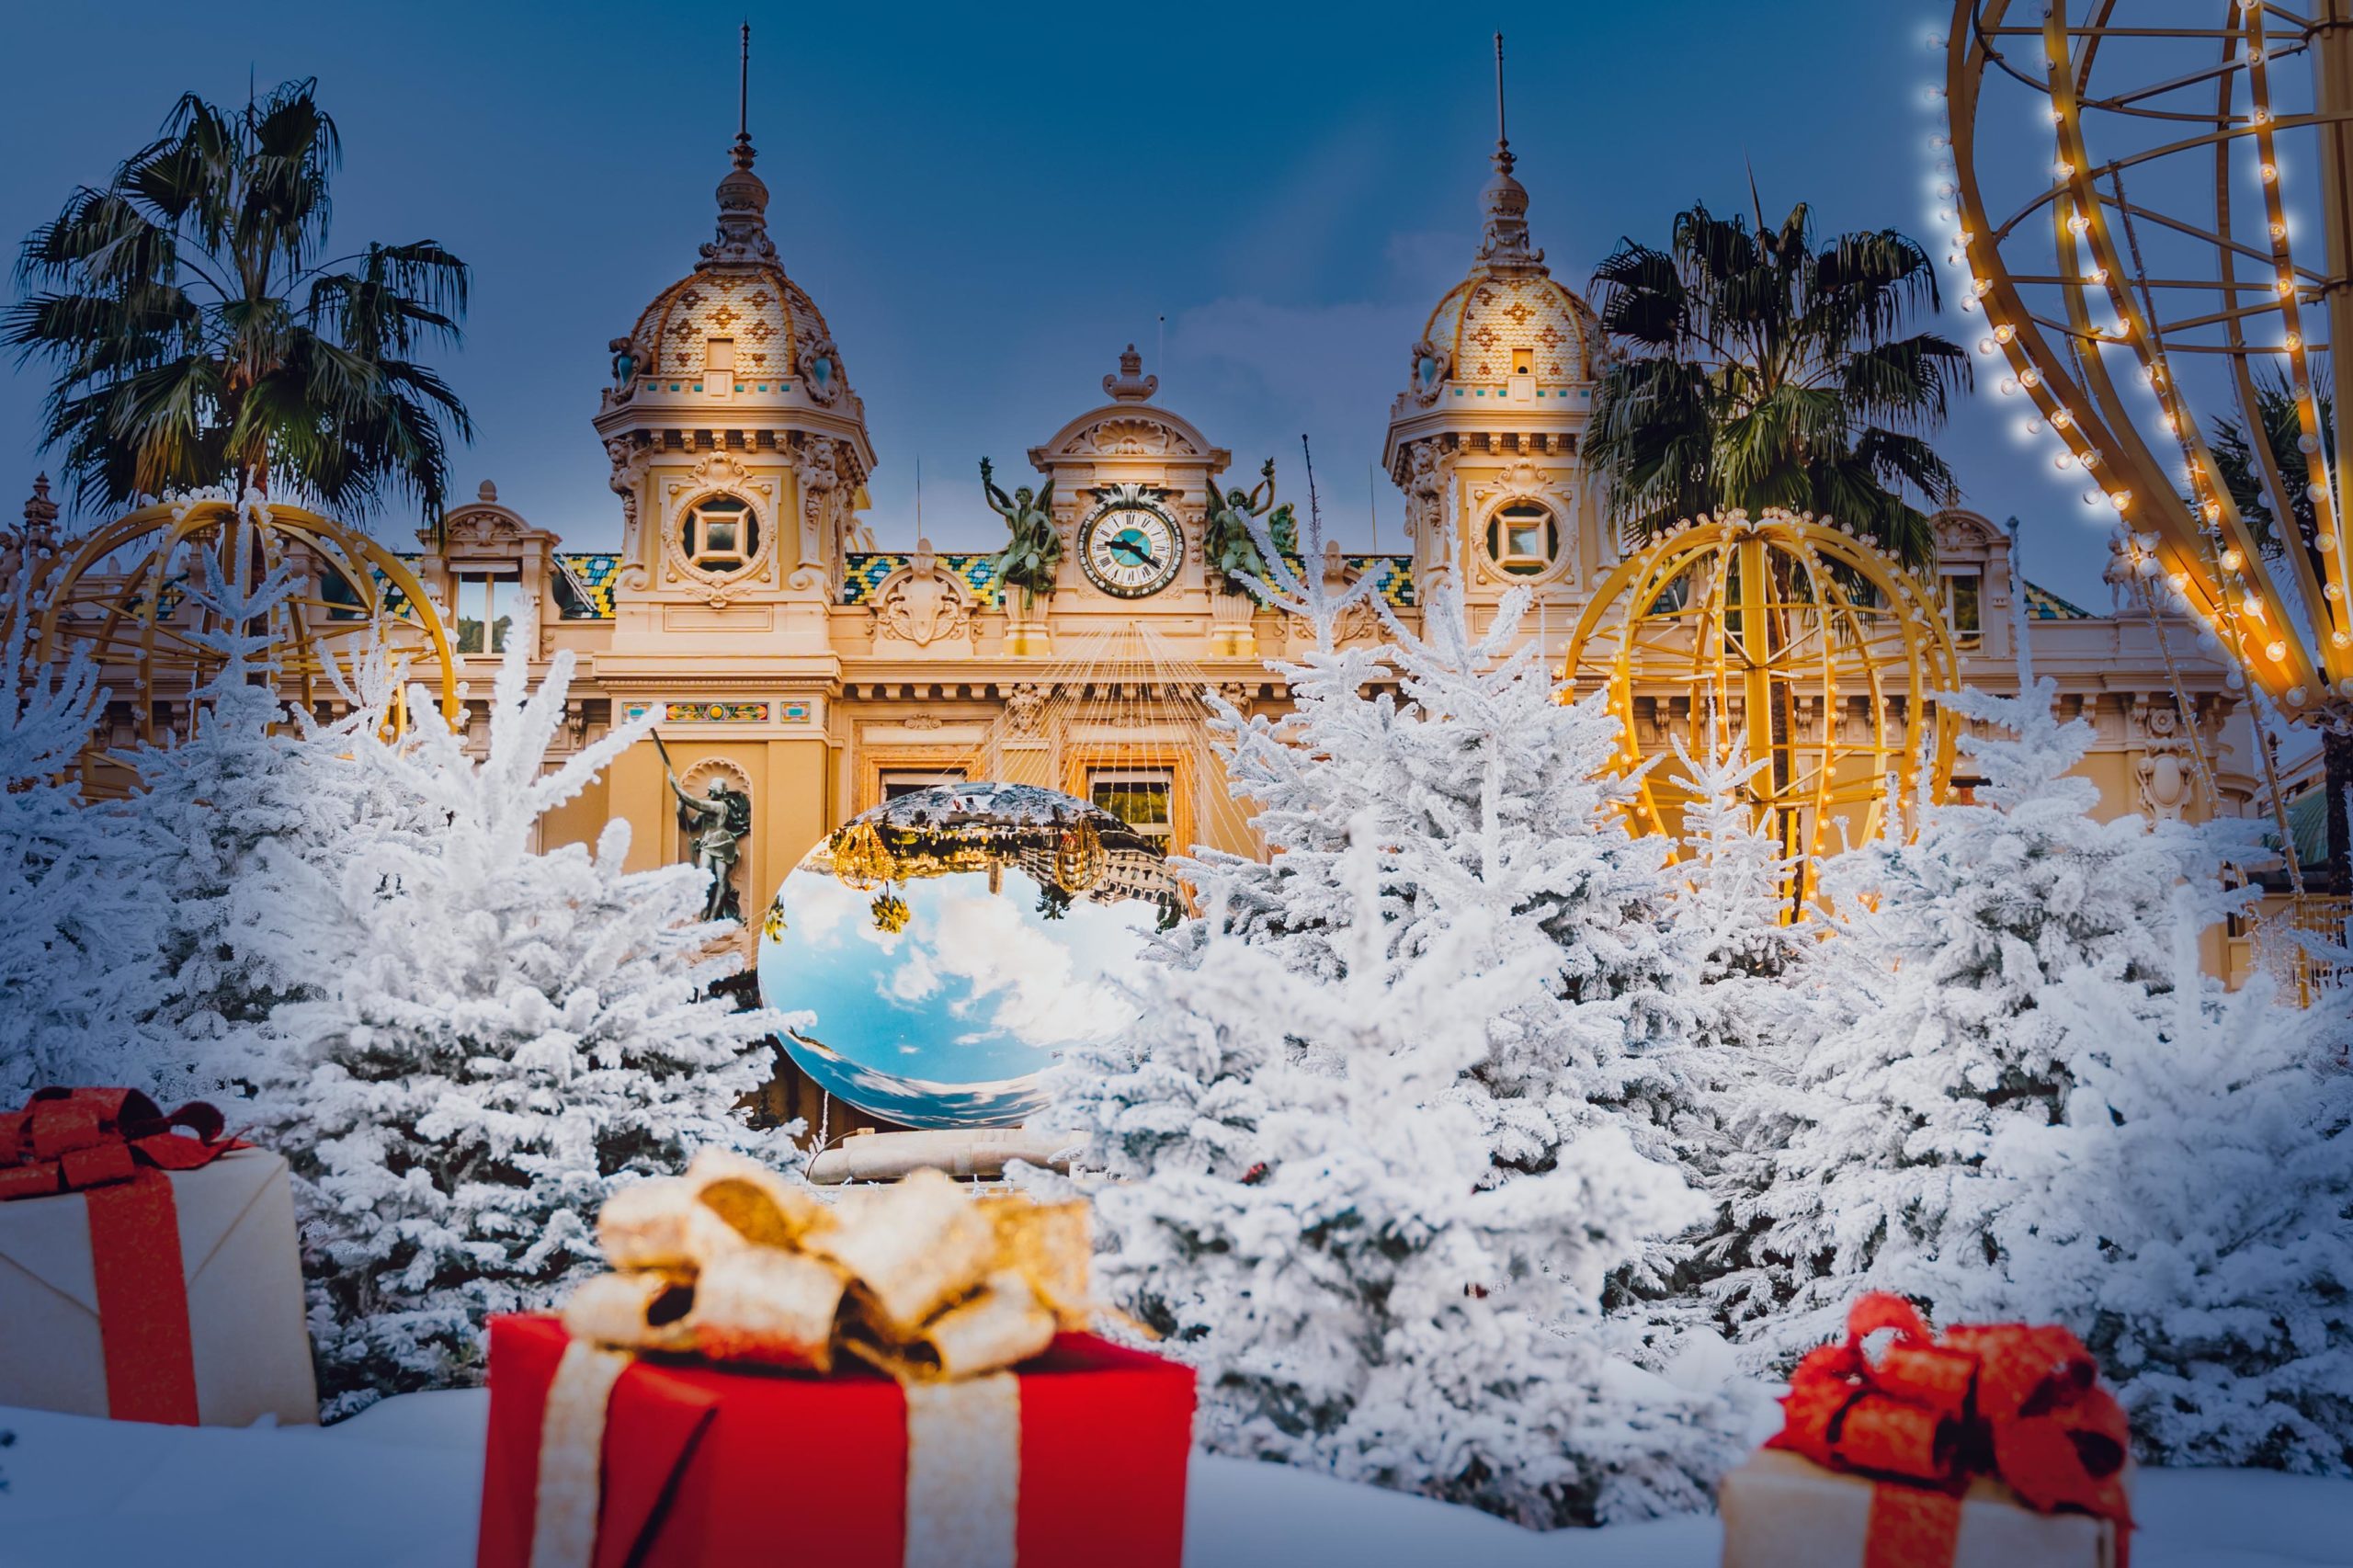 Le Casino de Monte Carlo à Noël. Photo @natakorenikha16 via Twenty20